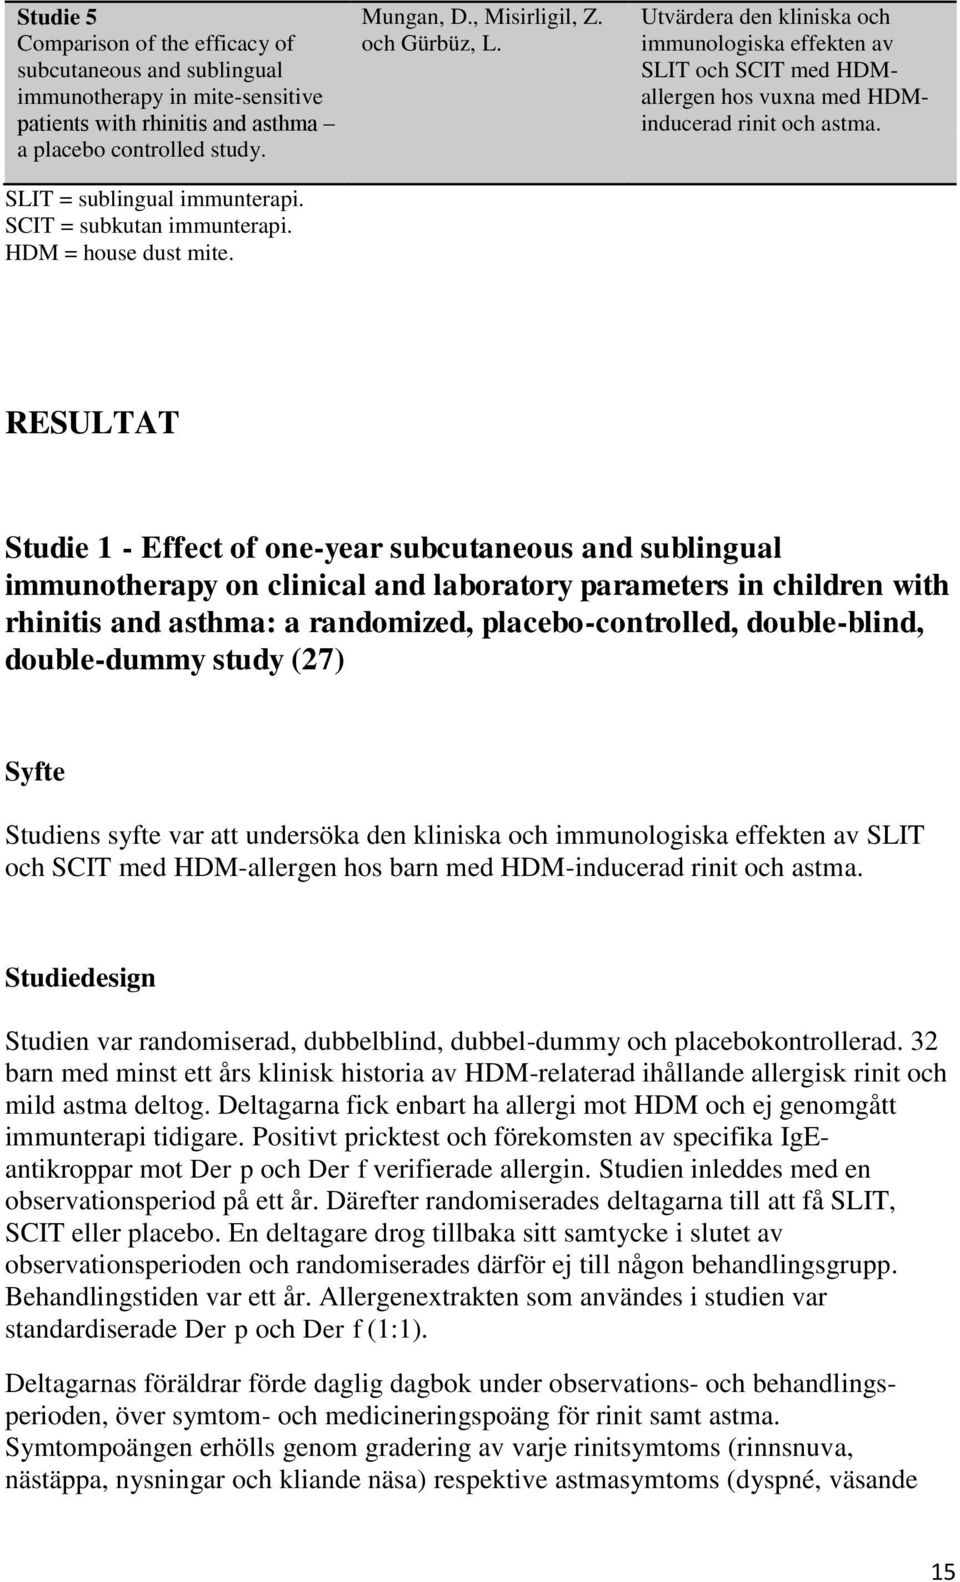 Utvärdera den kliniska och immunologiska effekten av SLIT och SCIT med HDMallergen hos vuxna med HDMinducerad rinit och astma.